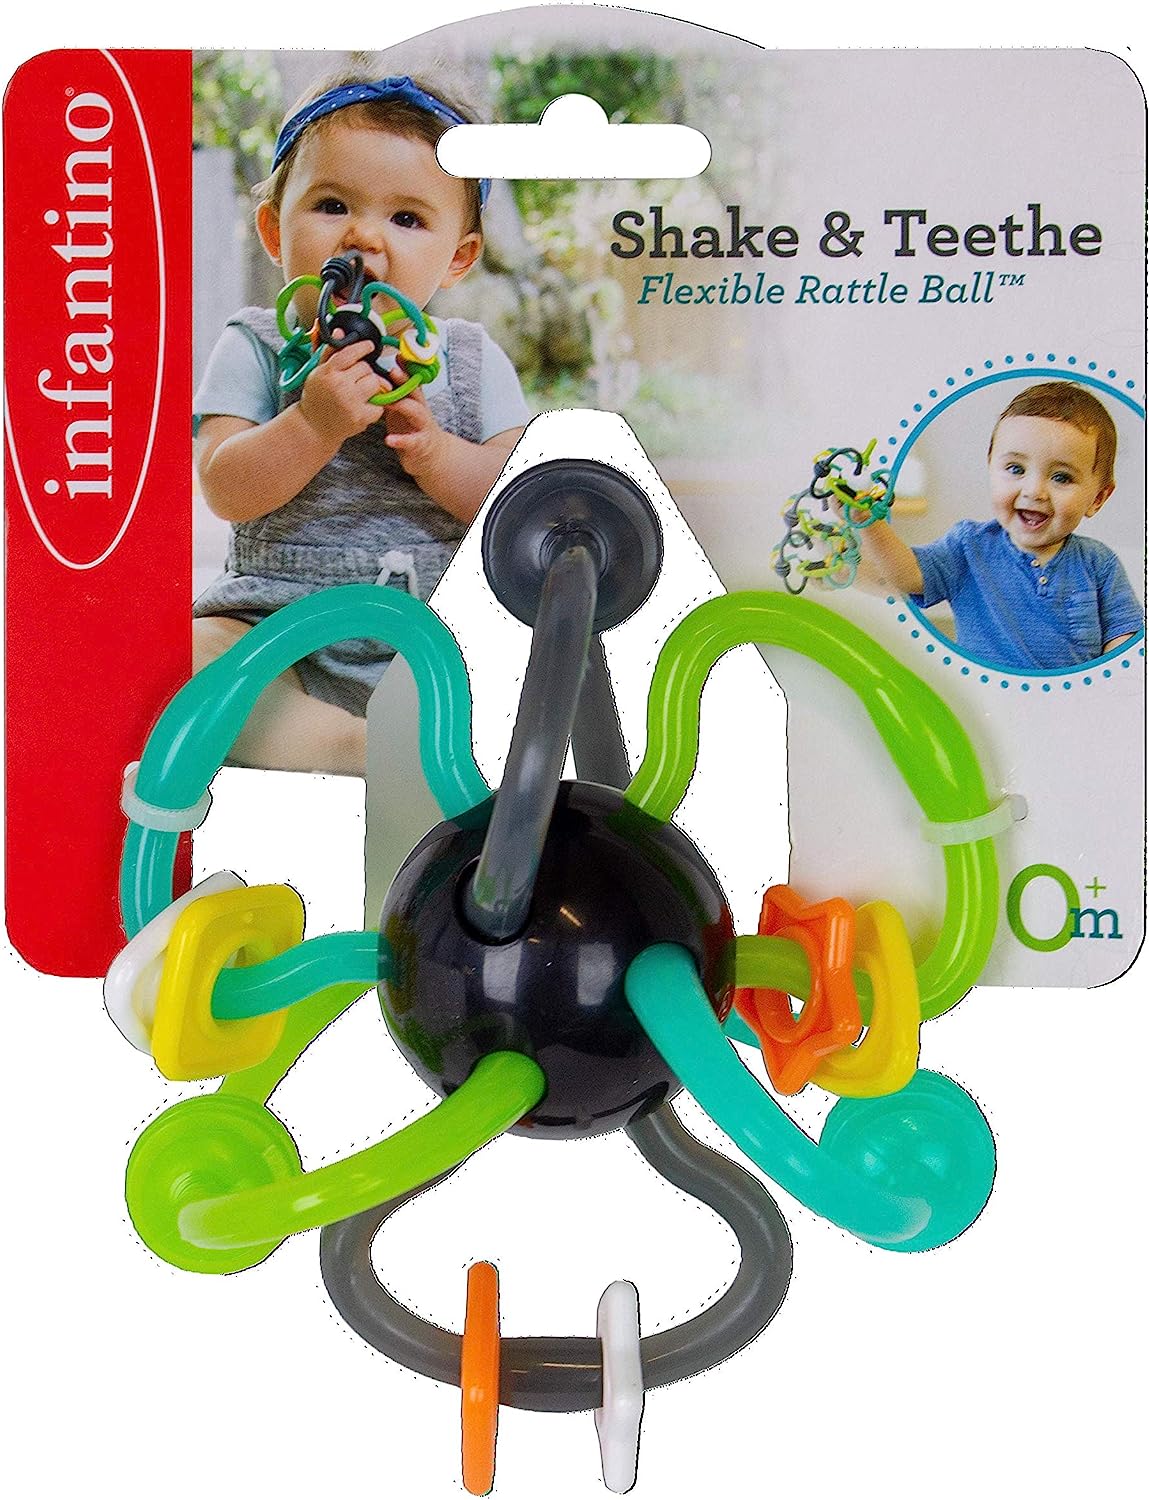 Infantino Shake & Teethe Flexible Rattle Ball.